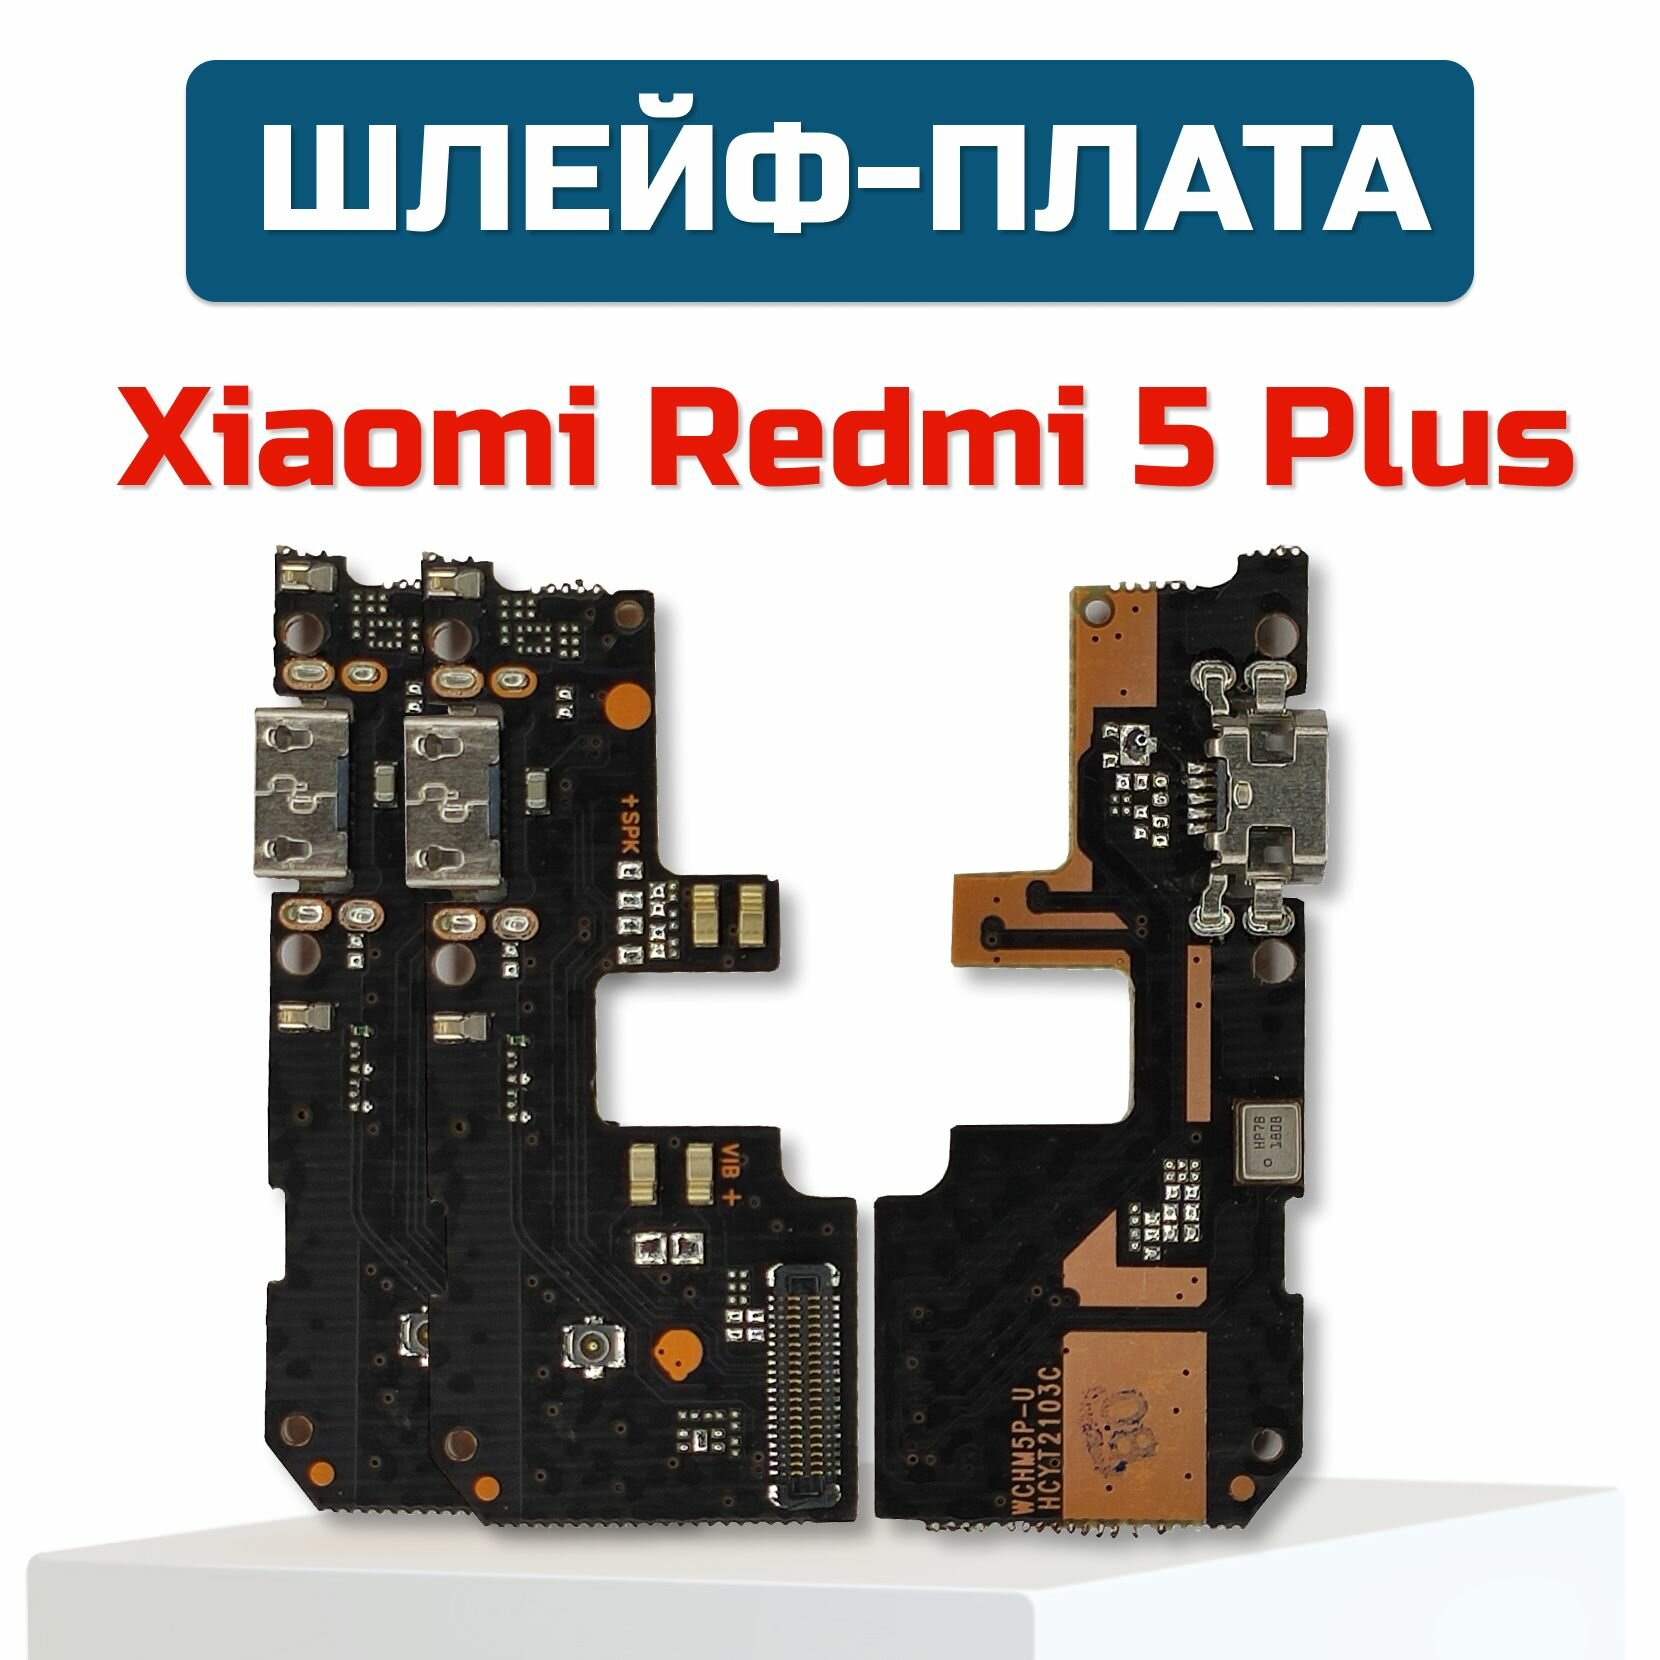 Шлейф-плата для Xiaomi Redmi 5 Plus